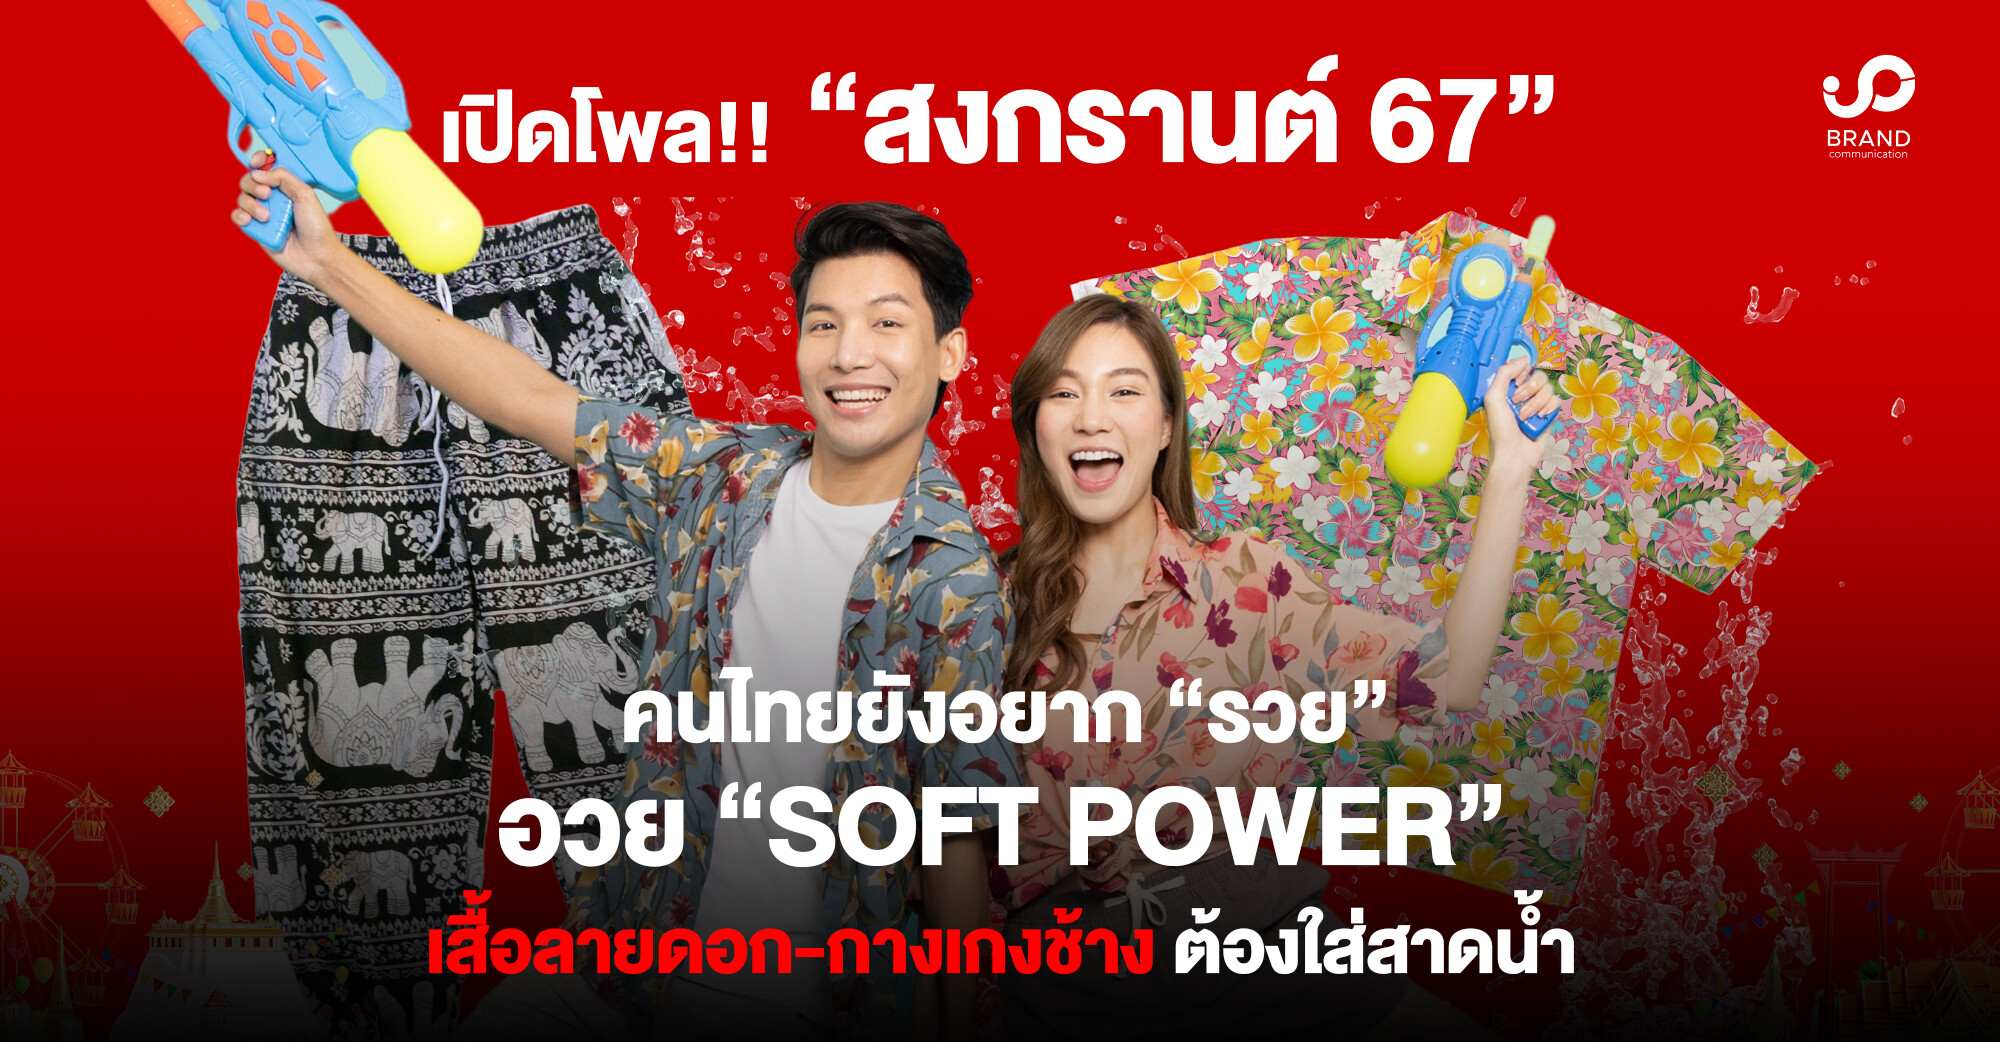 เปิดโพล! "สงกรานต์" คนไทยยังอยาก "รวย" อวย "Soft Power" เสื้อลายดอก-กางเกงช้าง ต้องใส่สาดน้ำ